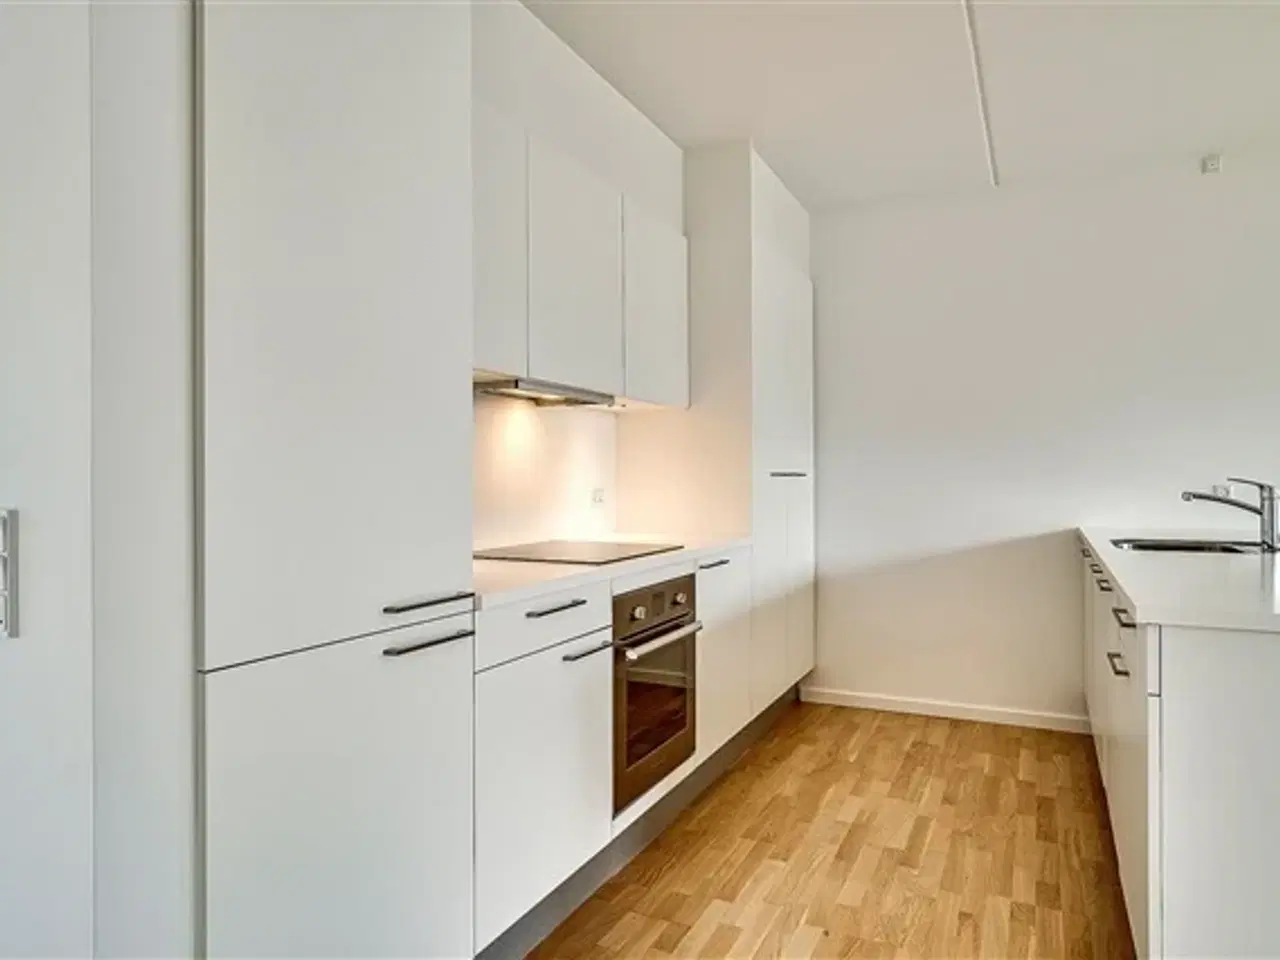 Billede 1 - Vestre Teglgade, 111 m2, 4 værelser, 17.500 kr., København SV, København